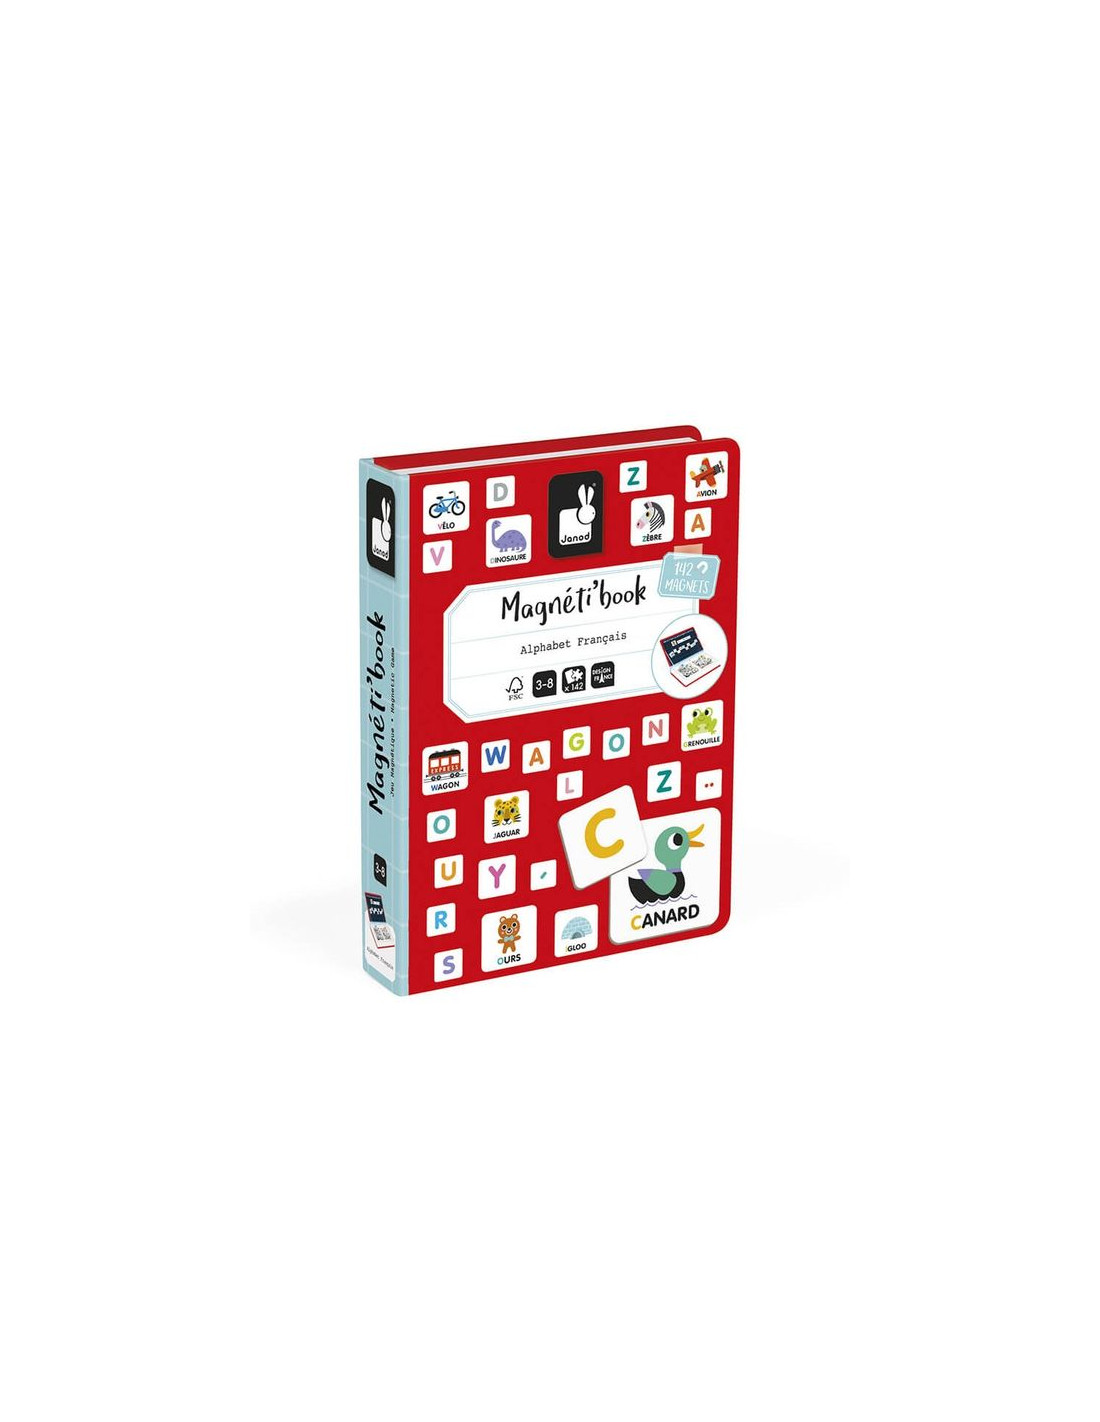 Magneti'Book Moduloform - Un jeu Janod - Boutique BCD Jeux